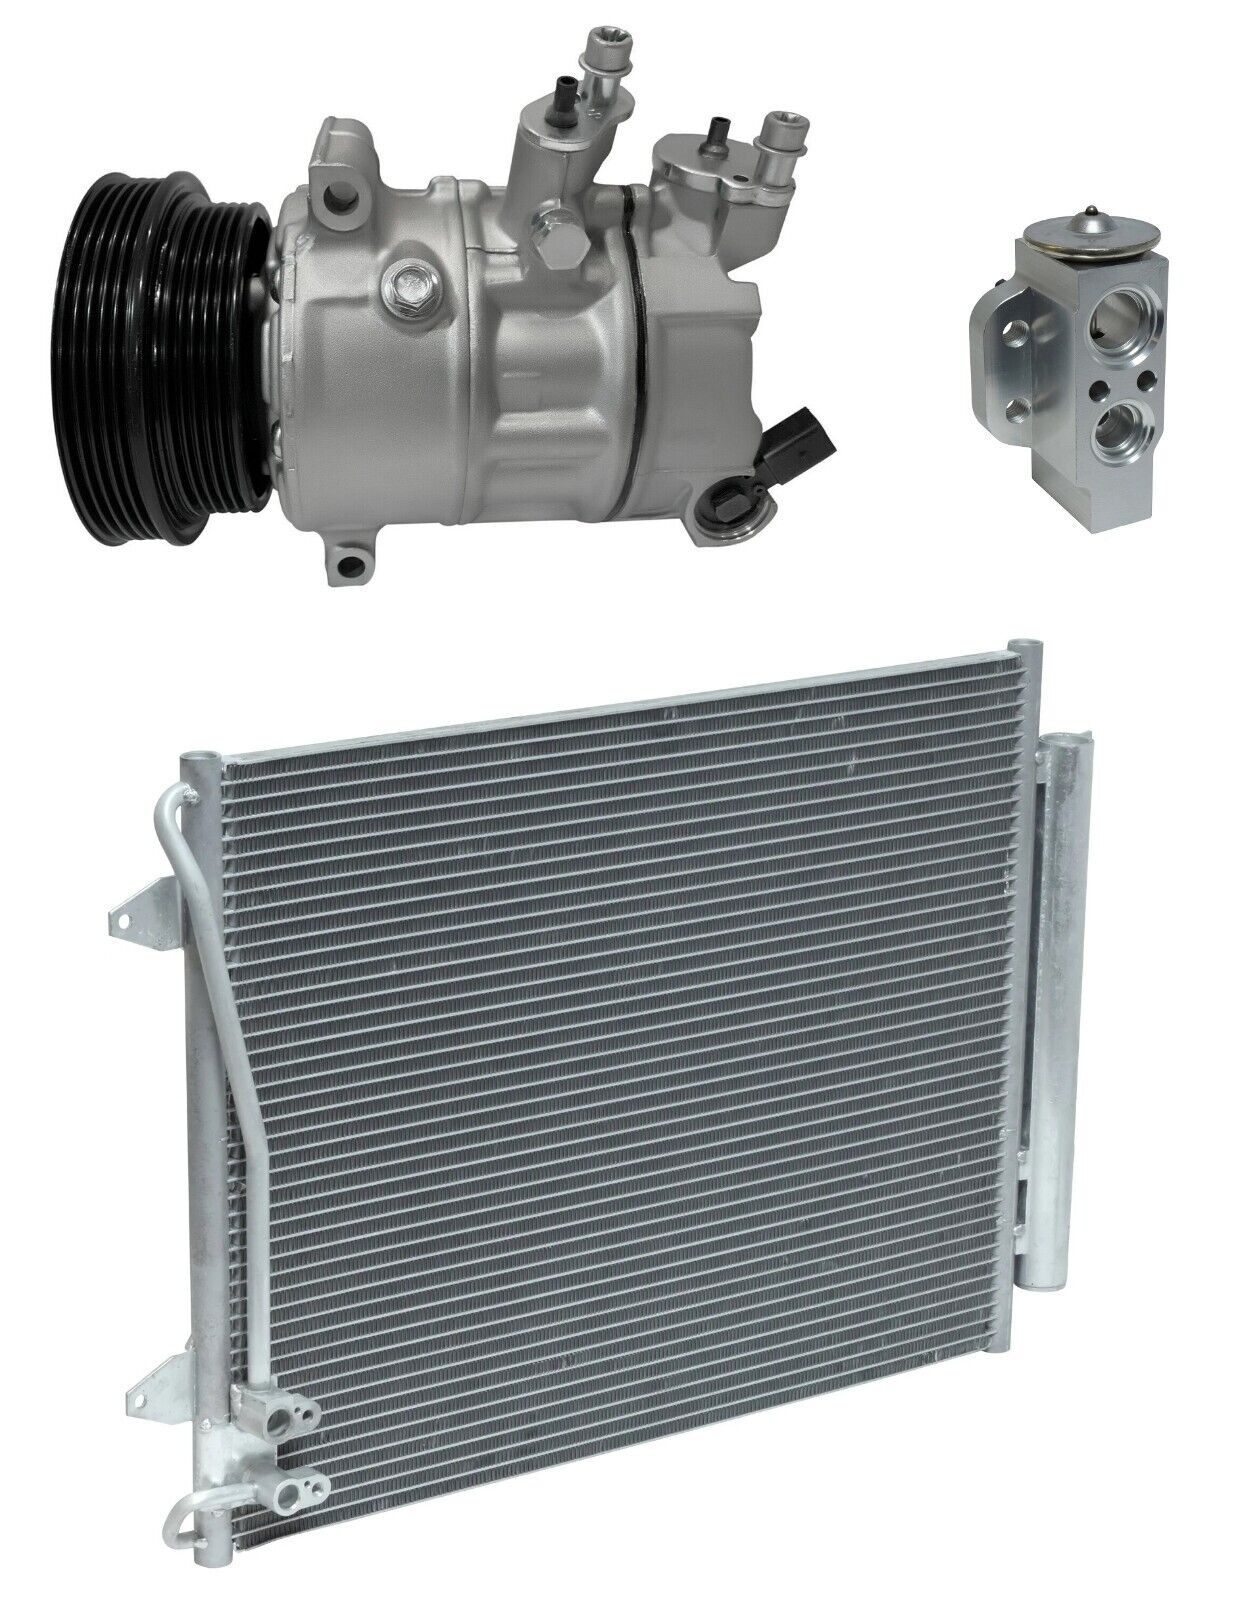 NEW RYC AC Compressor Kit W/ Condenser F098A-N Fits Volkswagen Passat 2.5L 2012